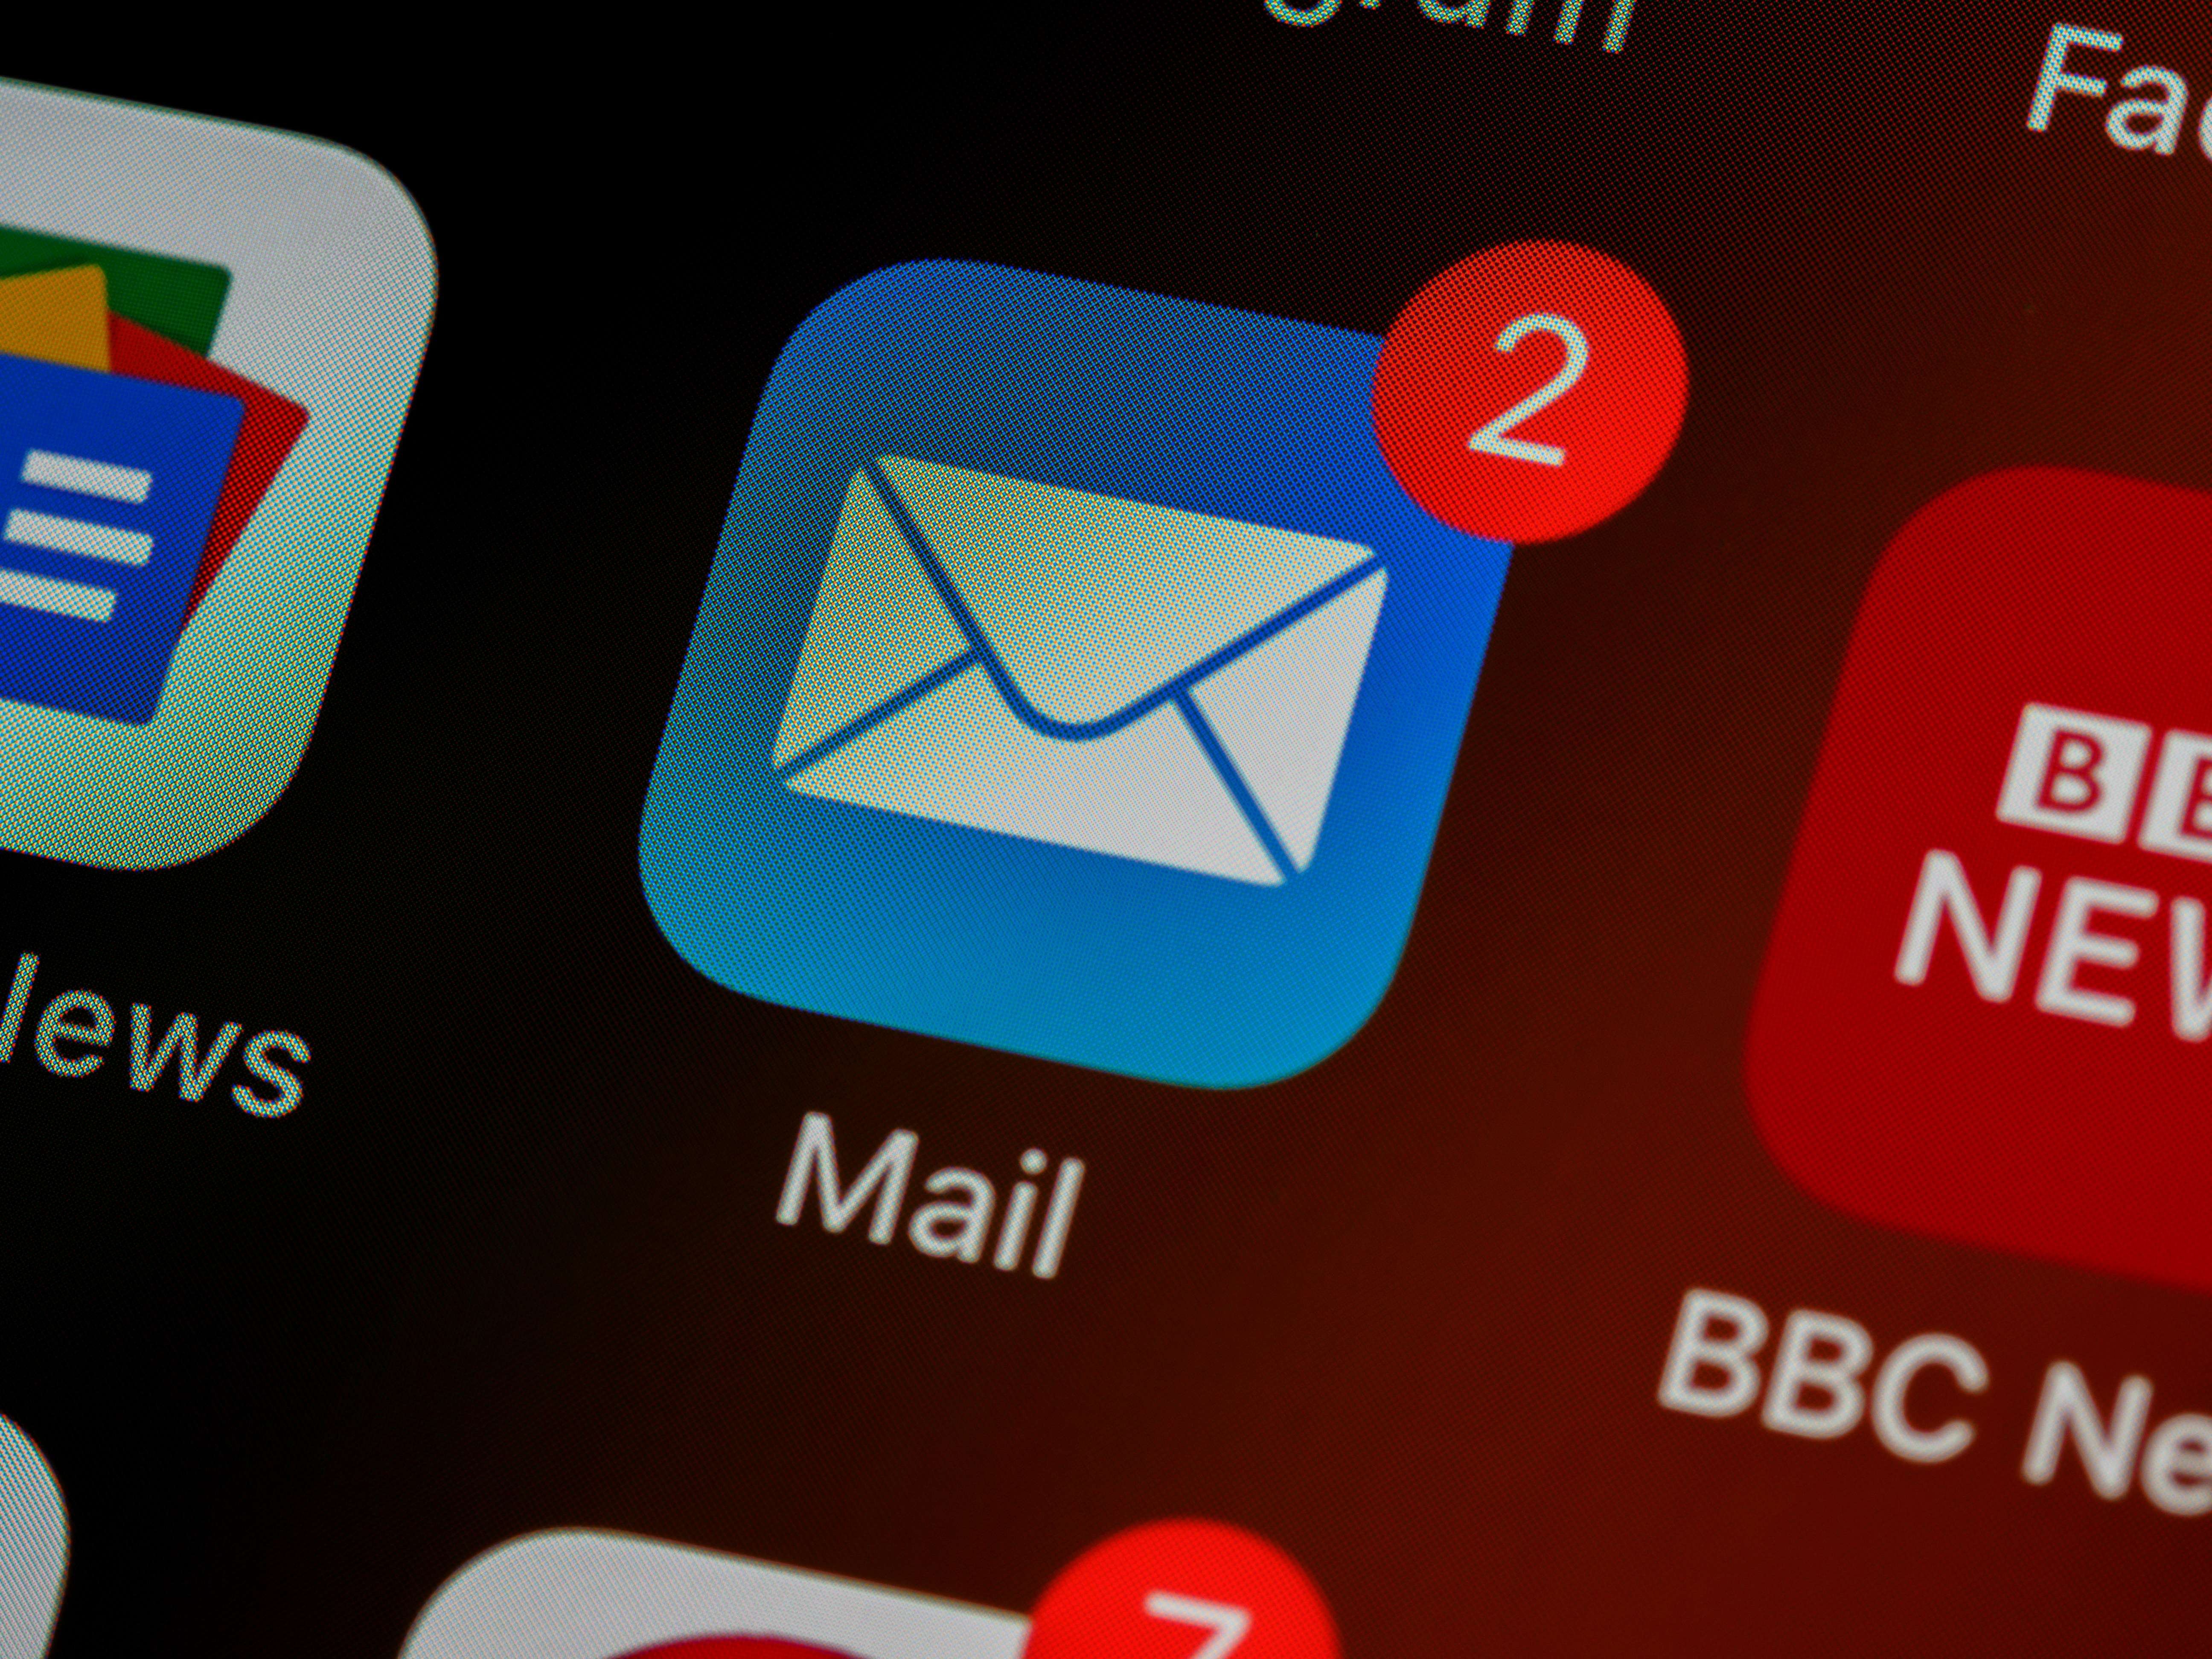 Comment intégrer Resend dans ton application pour envoyer des emails marketing ?